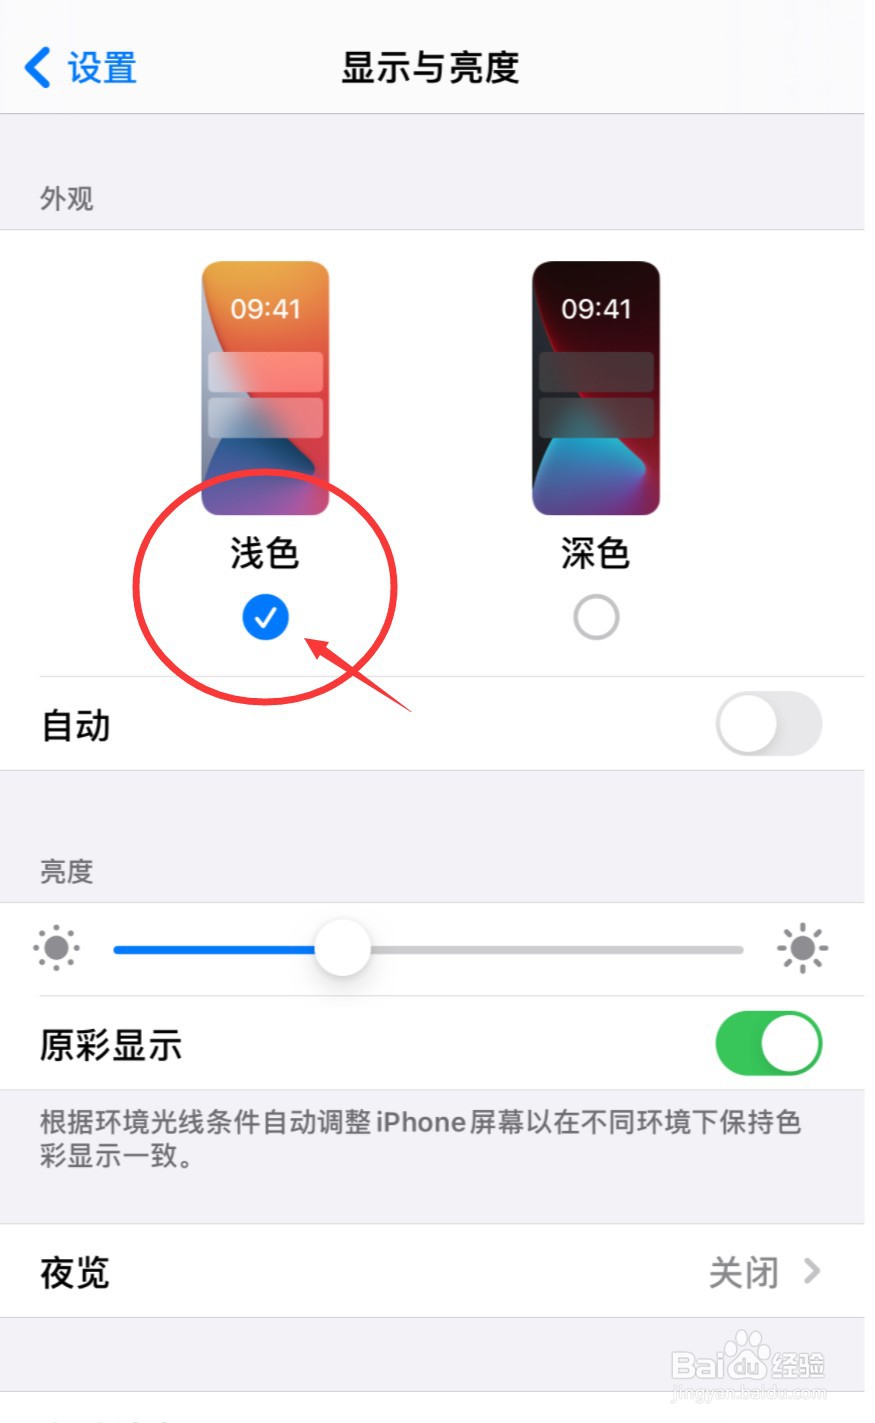 如何将iphone背景显示设置为浅色显示?